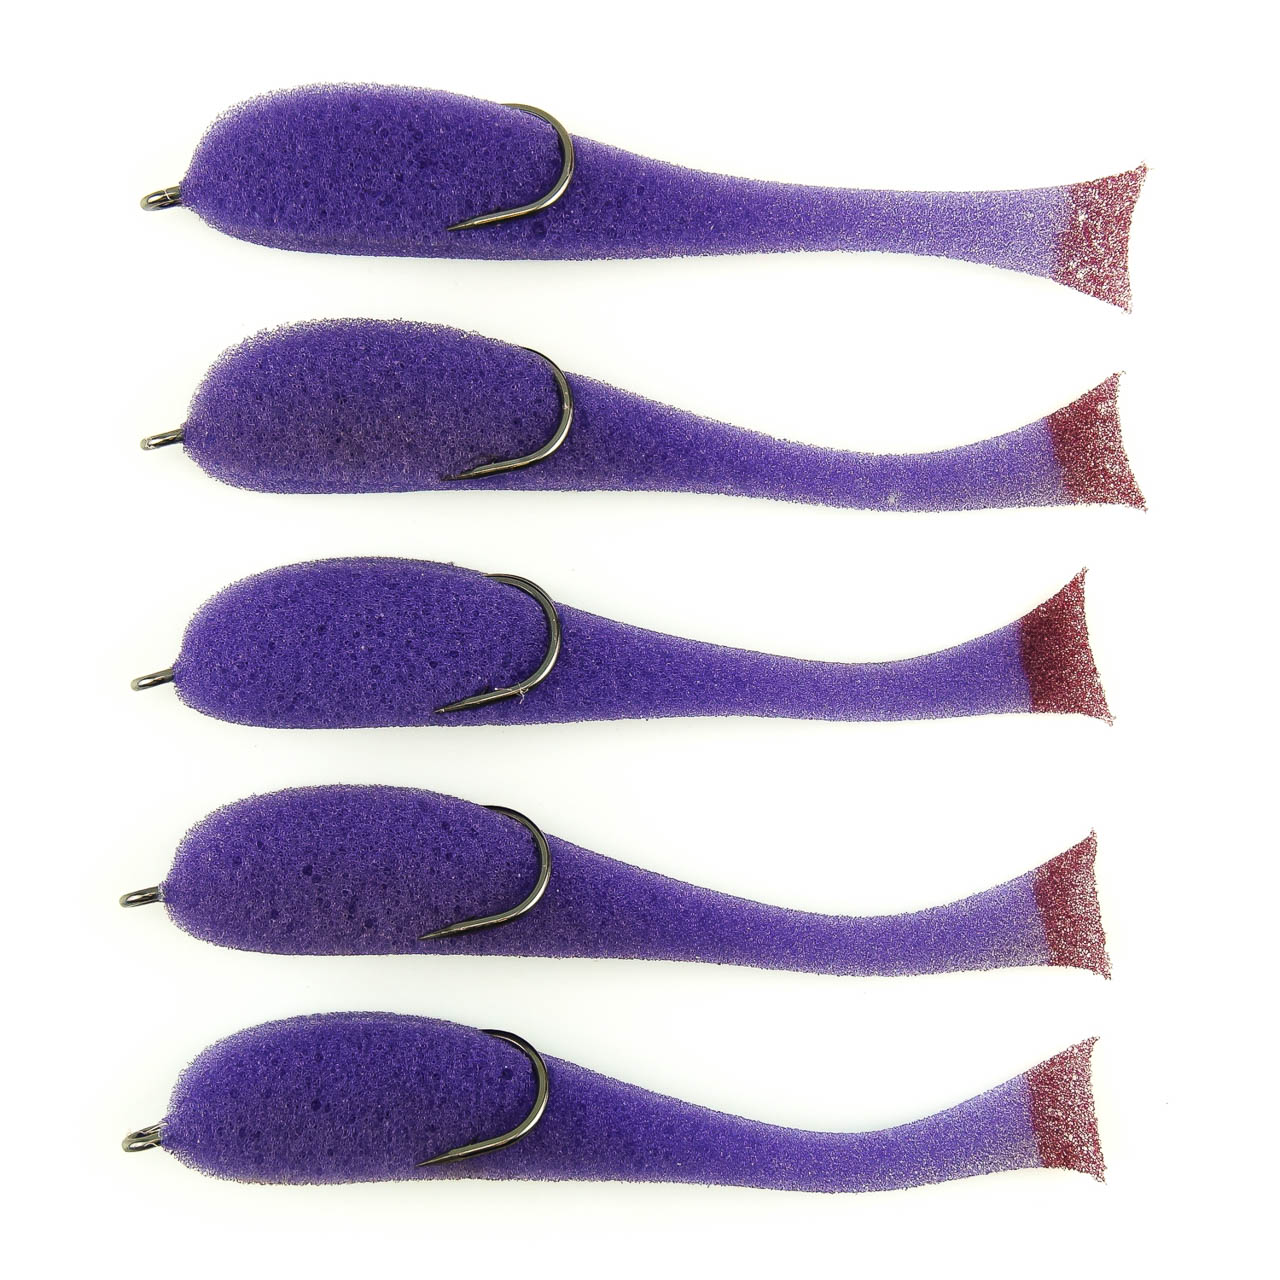 Поролоновая рыбка YAMAN на двойнике, р. 110 мм, цвет 17 UV (5 шт.)